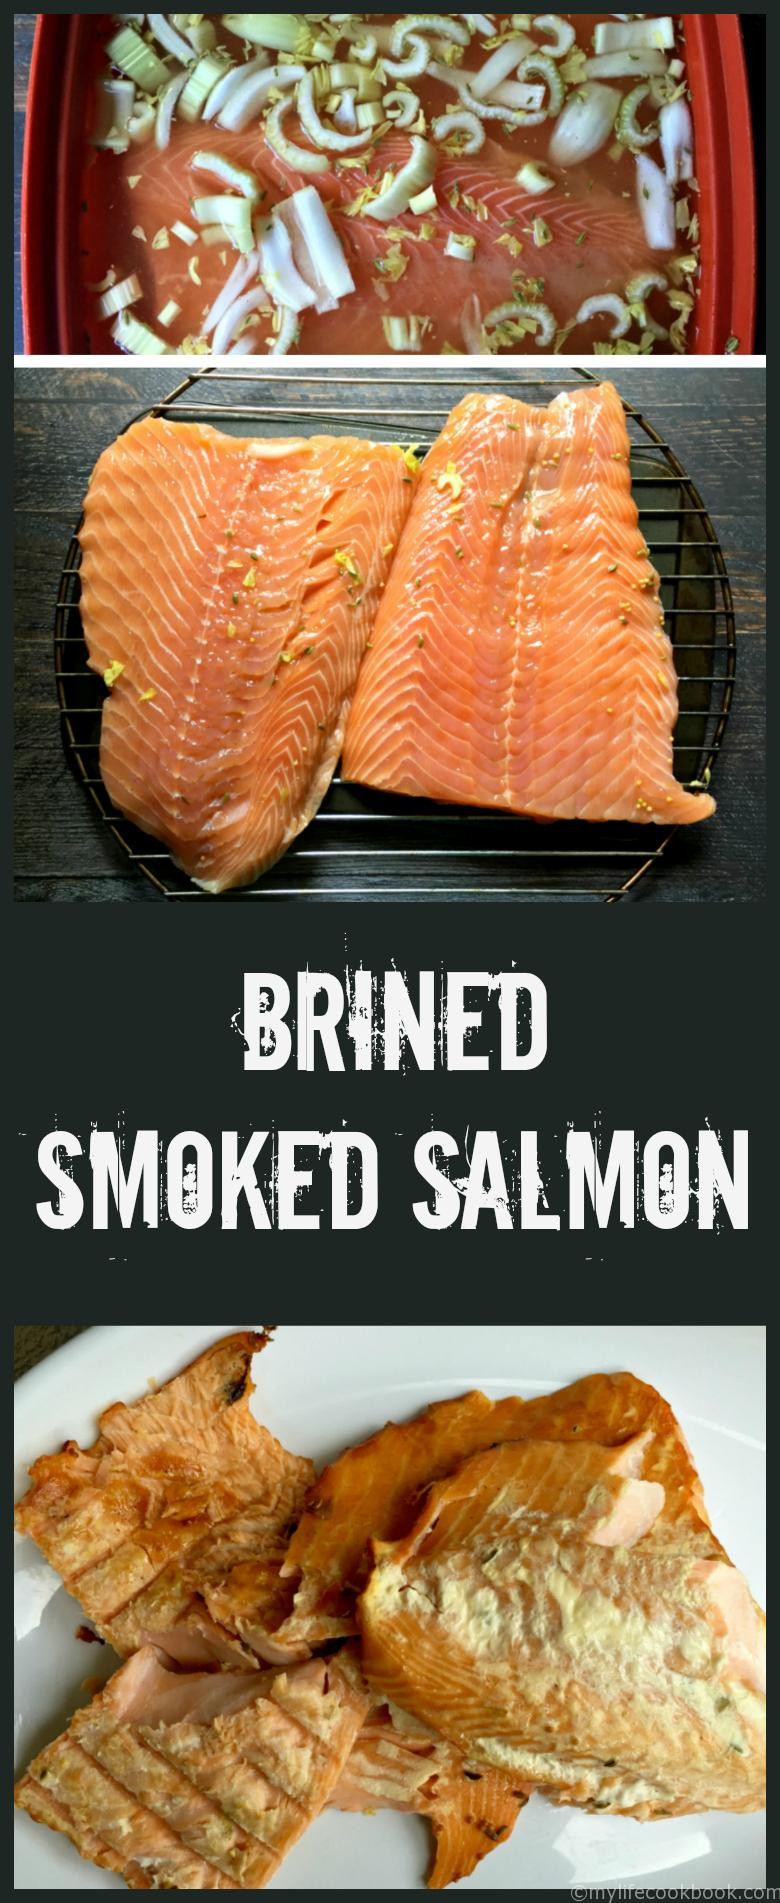 Brown Sugar Smoked Salmon
 Smoked Salmon Brine Recipe Brown Sugar